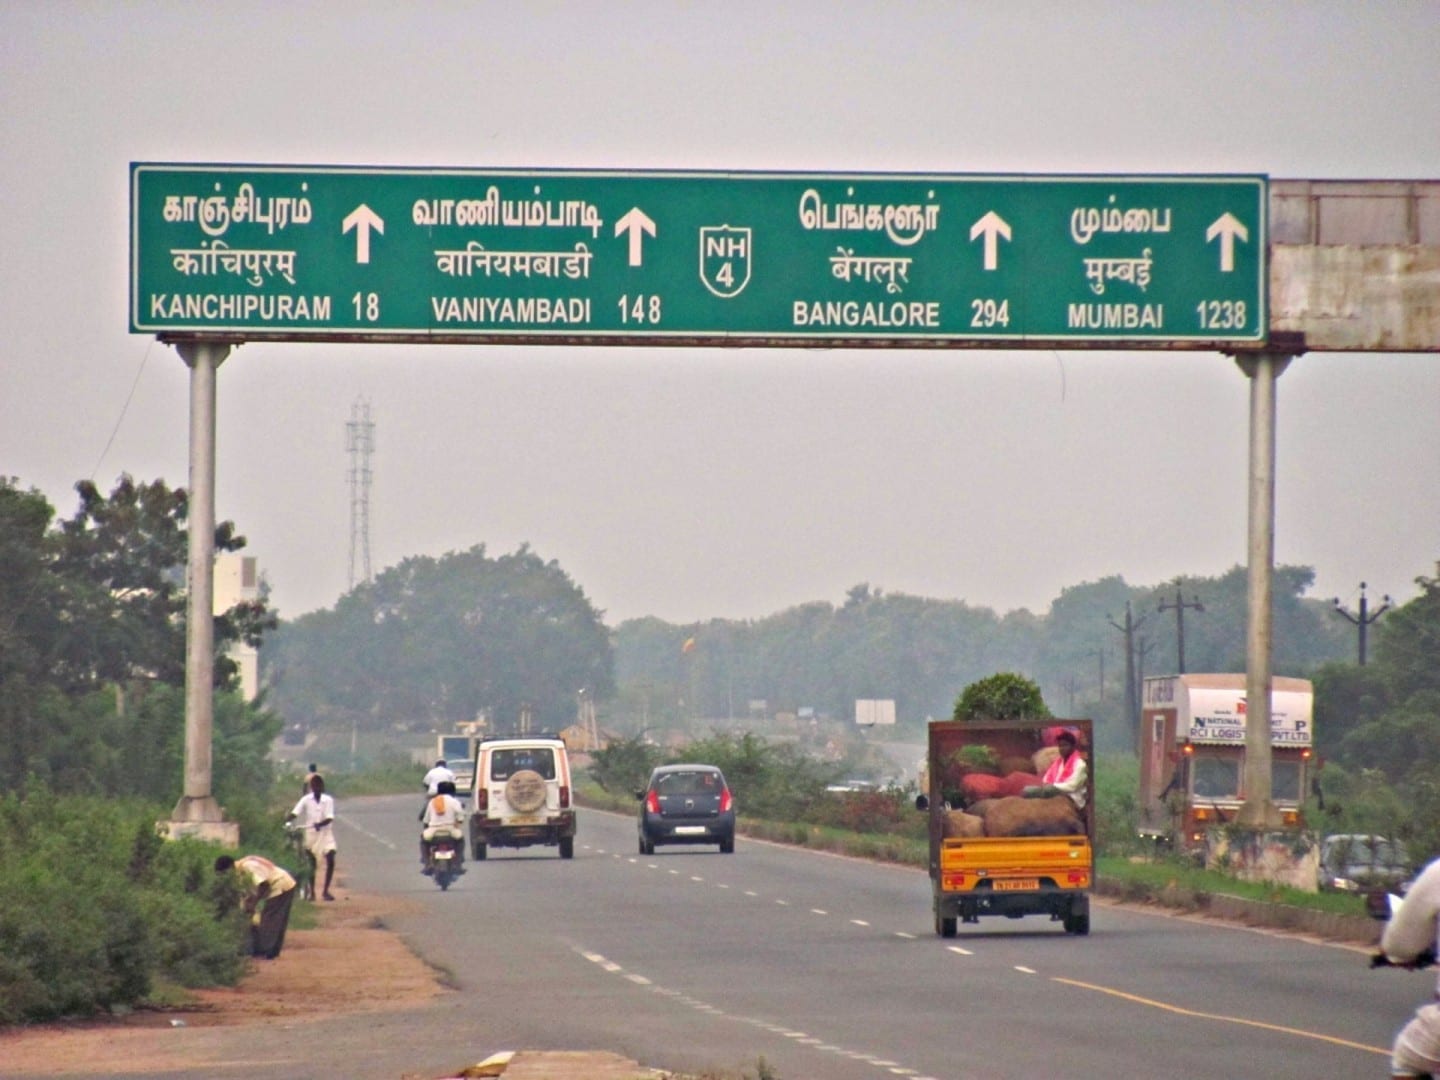 Señal de carretera en la autopista Chennai - Bangalore Chennai India